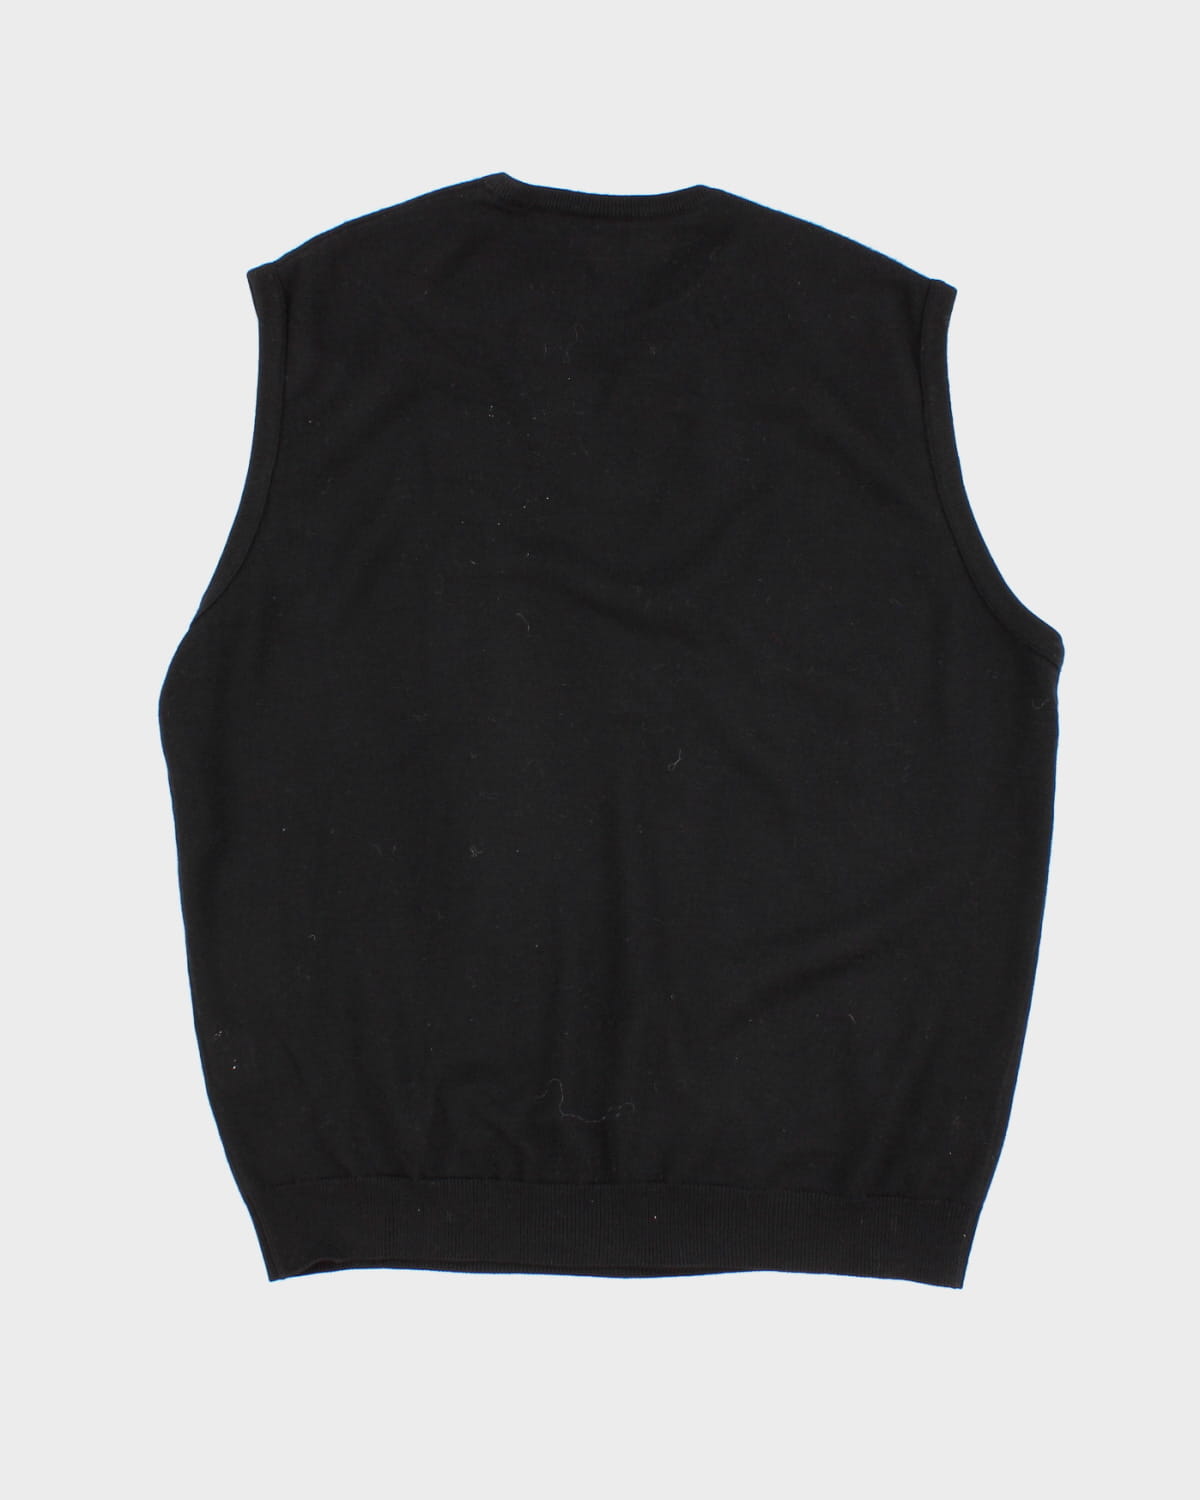 00s Lacoste Black Knit Vest - XL